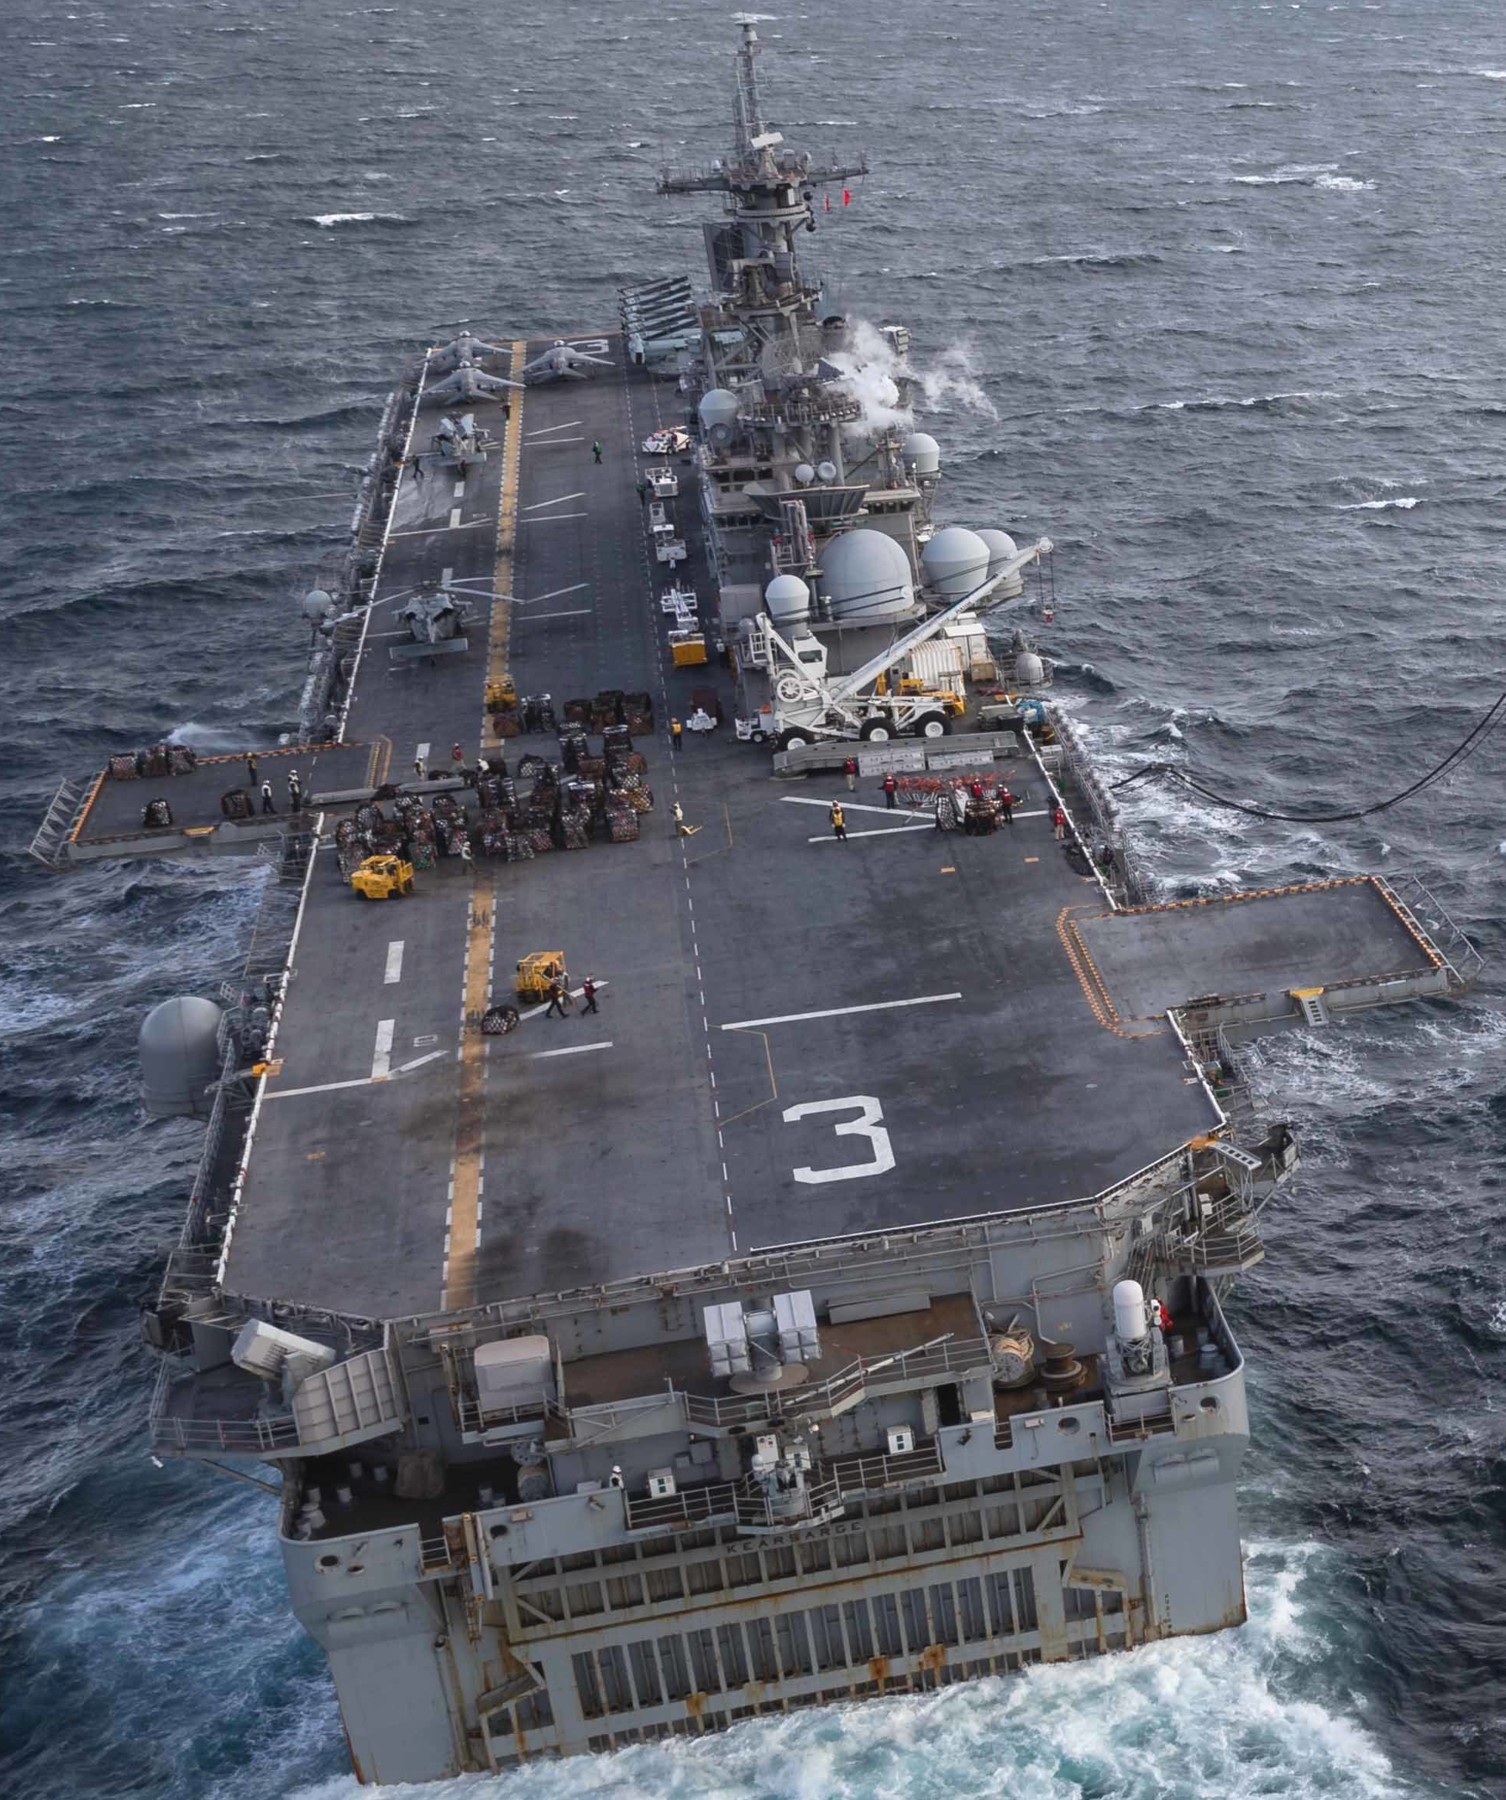 lhd-3 uss kearsarge wasp class amphibious assault ship us navy marines vmm-263 flight deck 233